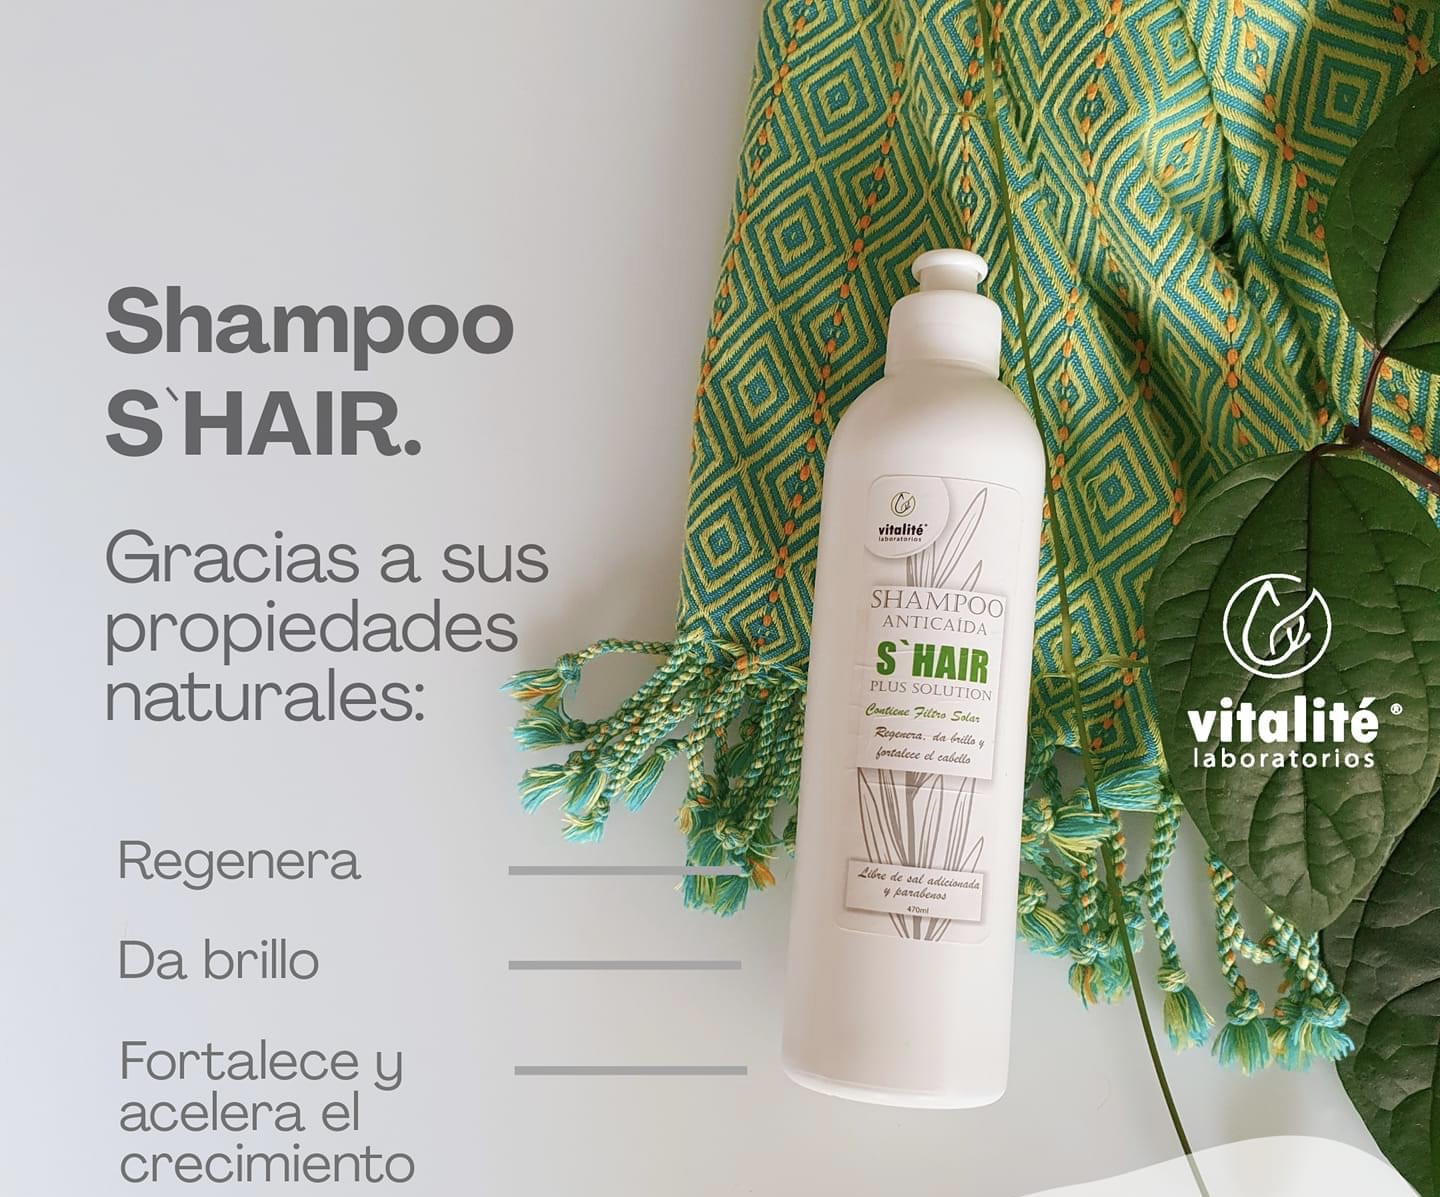 Shampoo S'hair. Coadyuvante control Caída y Crecimiento del cabello